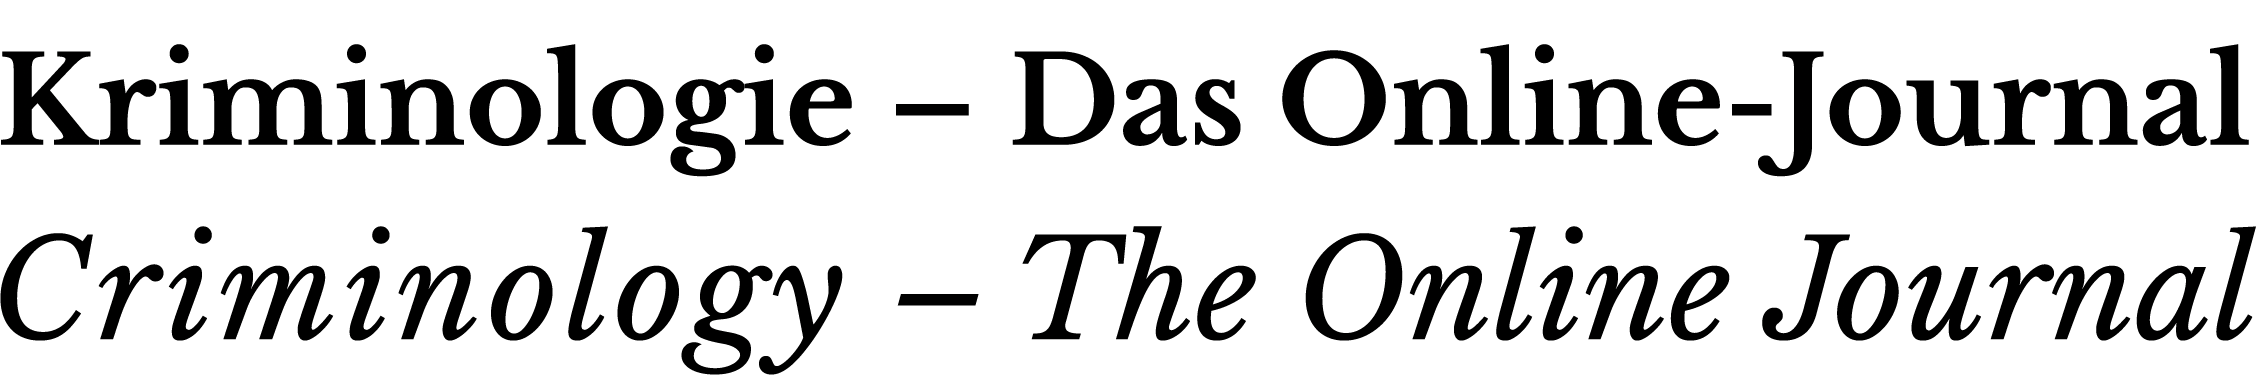 Das KrimiOJ-Logo